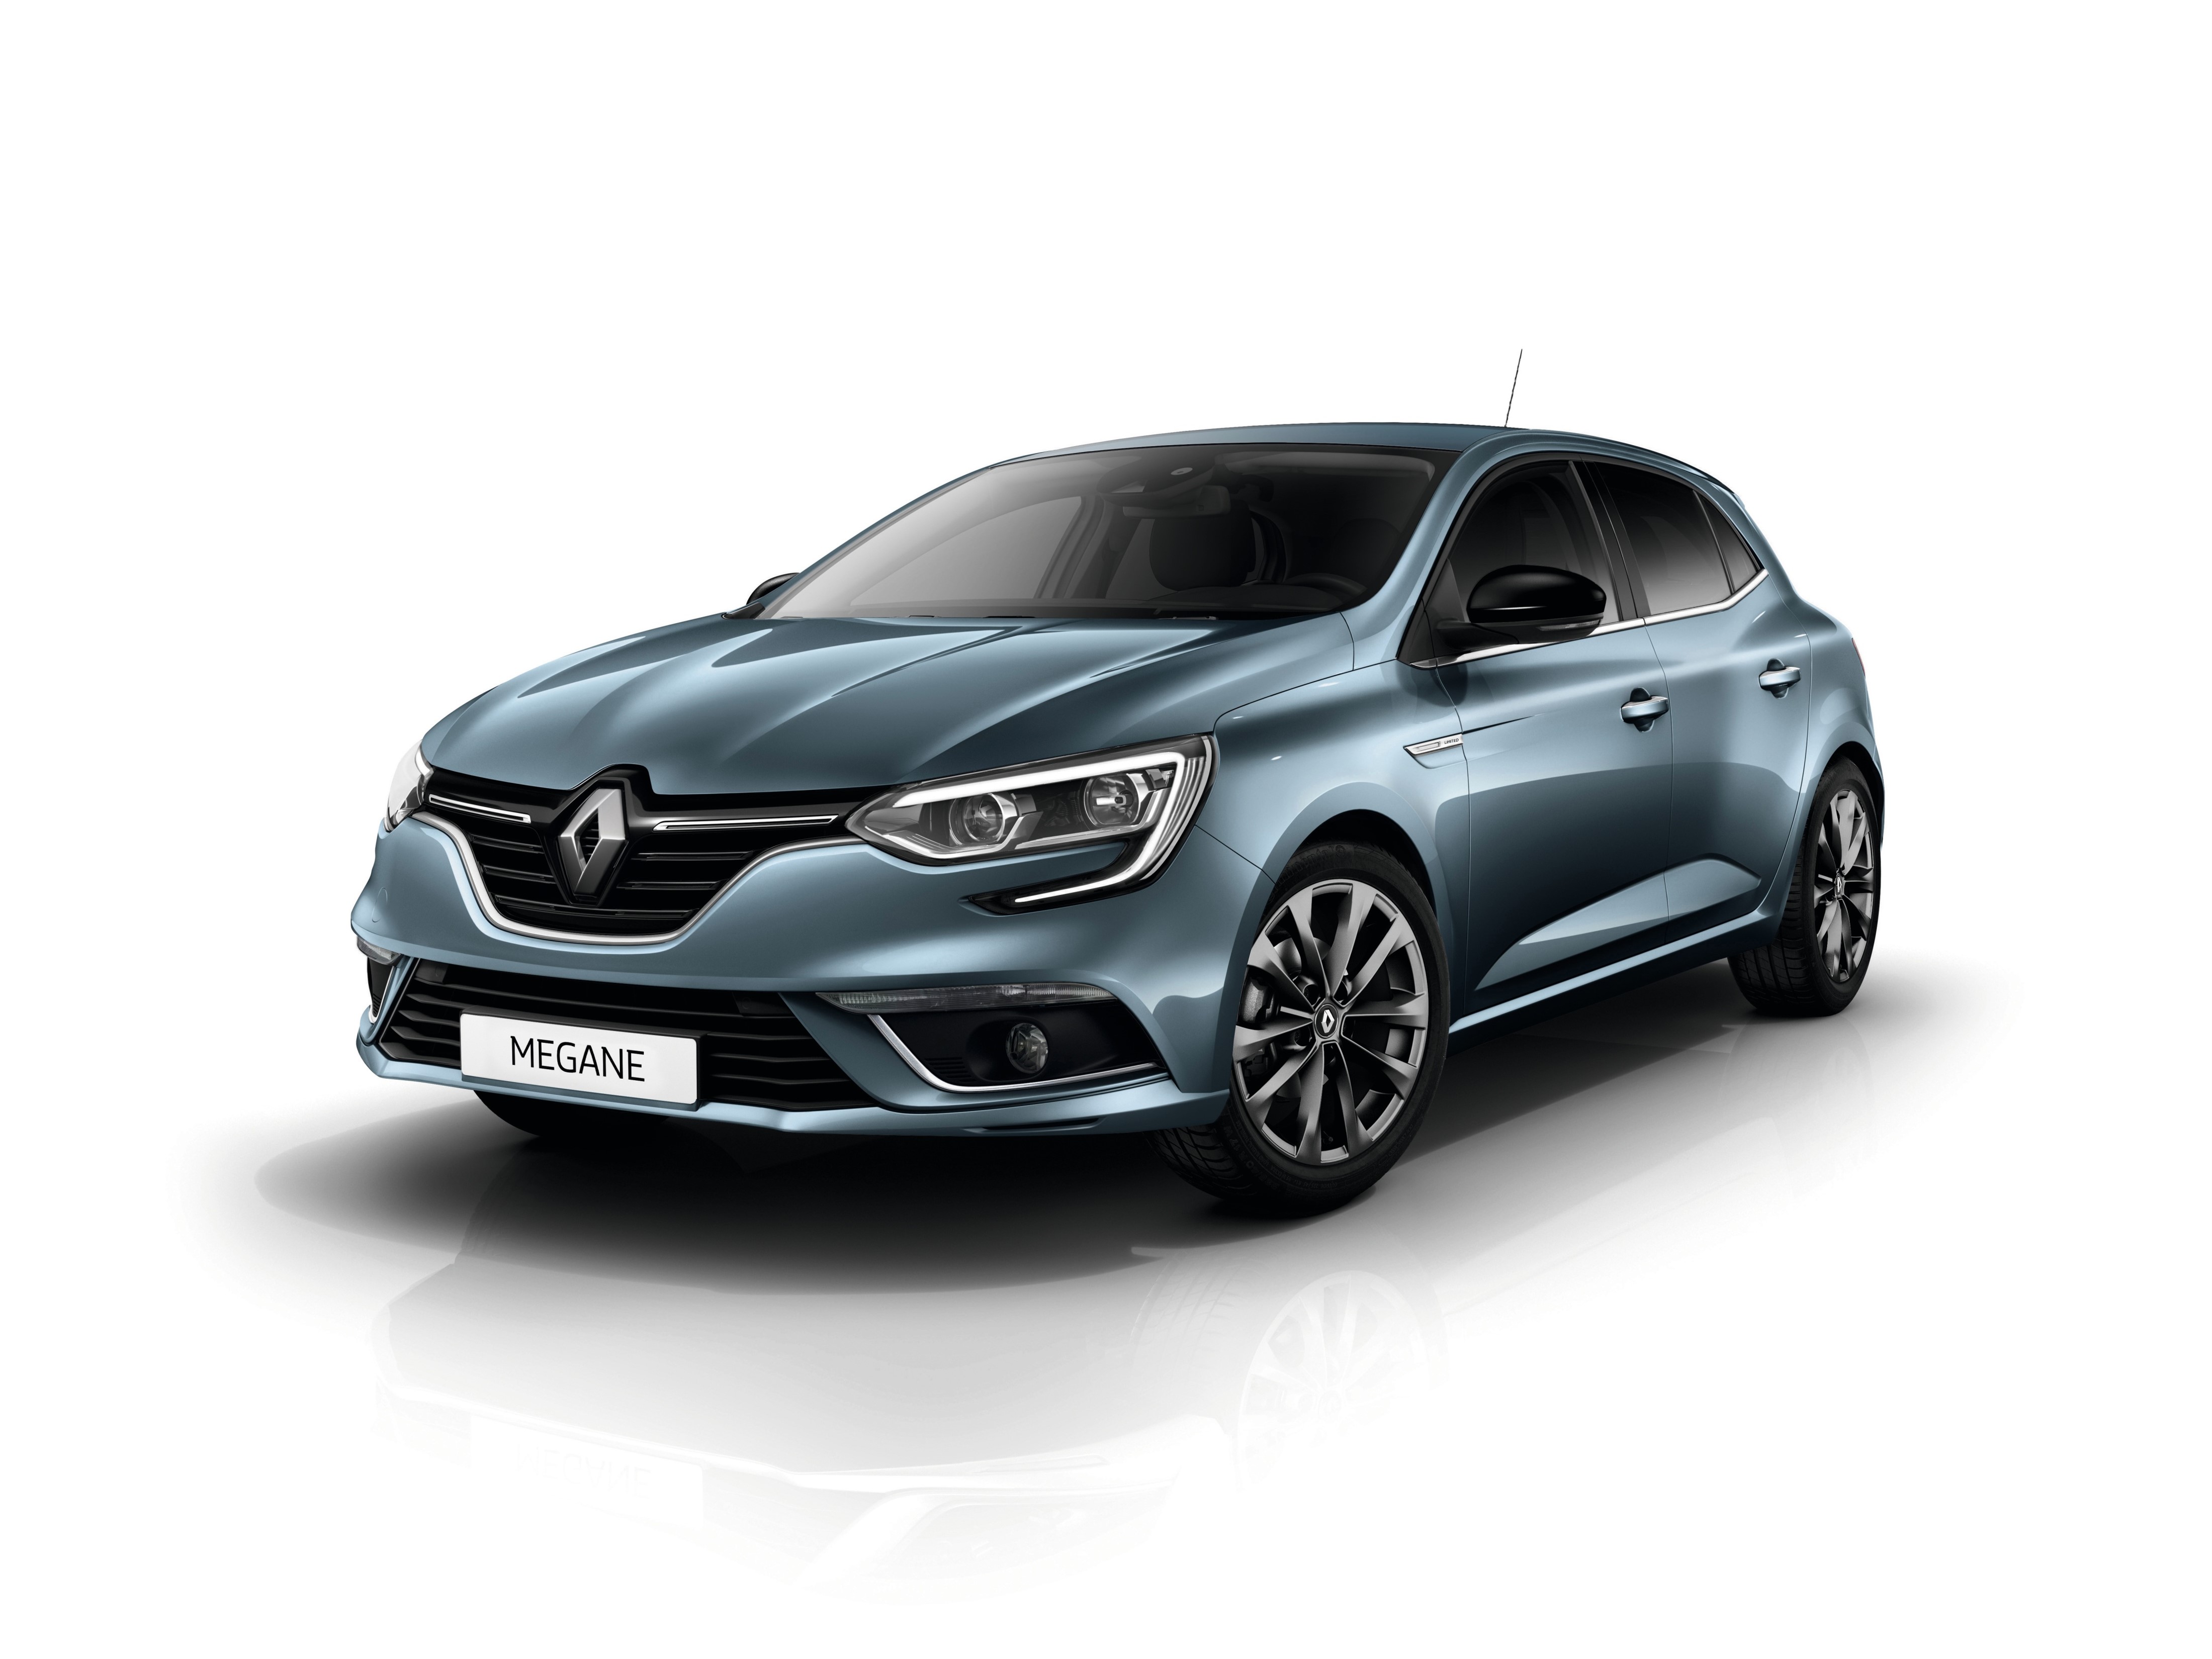 Sujet Officiel] Renault Megane IV (2016) - Page 722 - Megane - Renault -  Forum Marques Automobile - Forum Auto